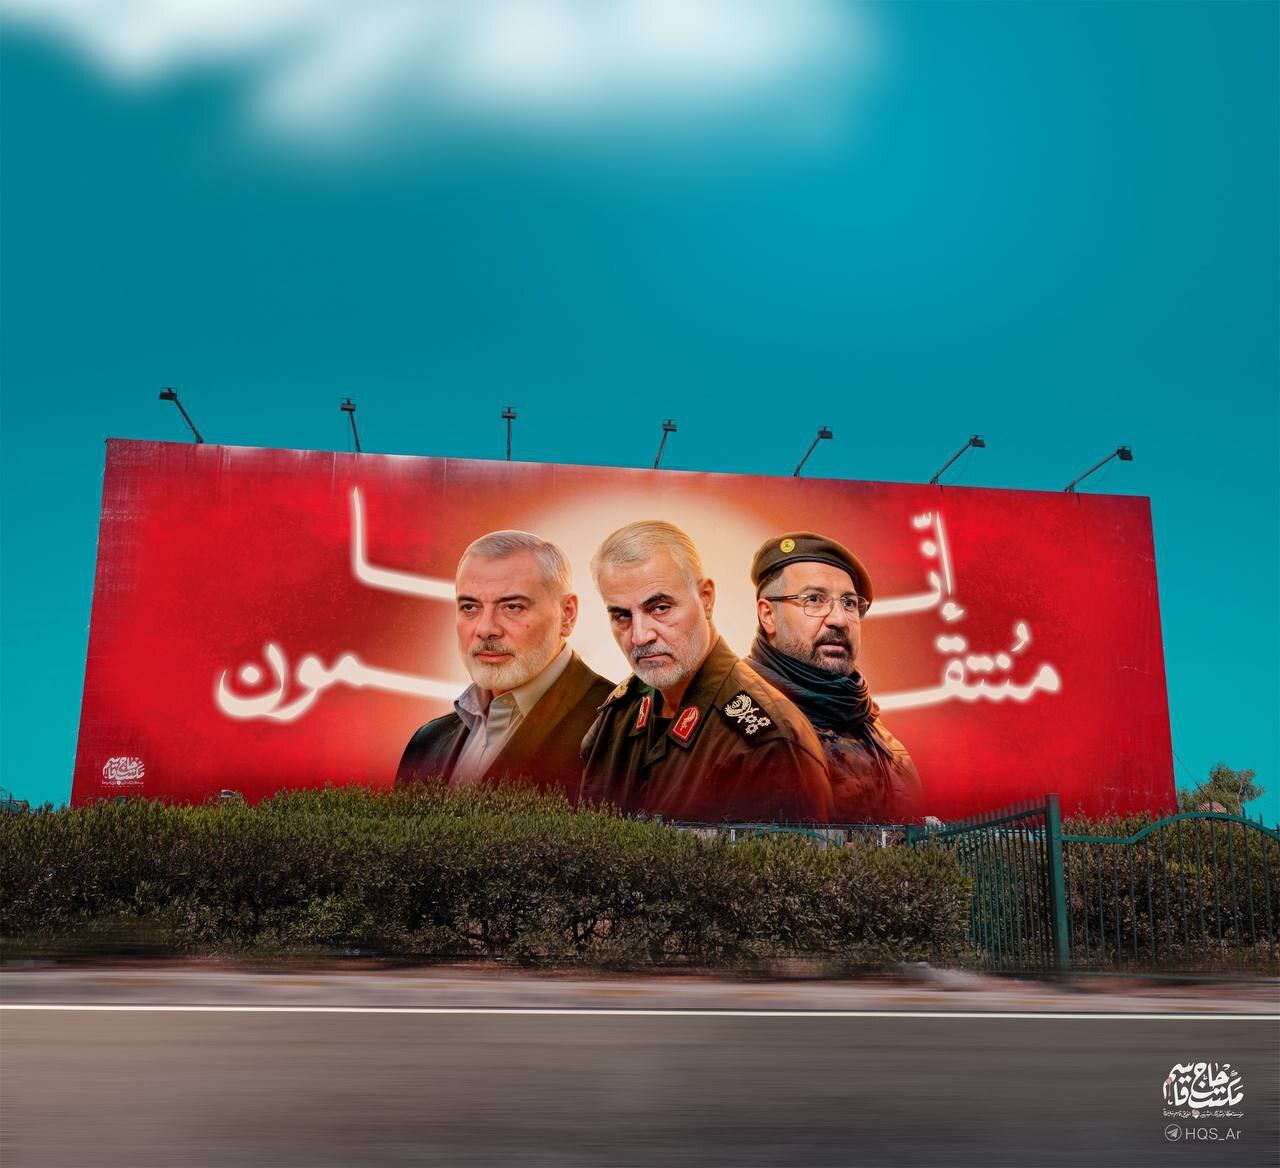 دیوارنگاره «إِنّا مُنتَقِمون» در جاده فرودگاه بیروت+ عکس